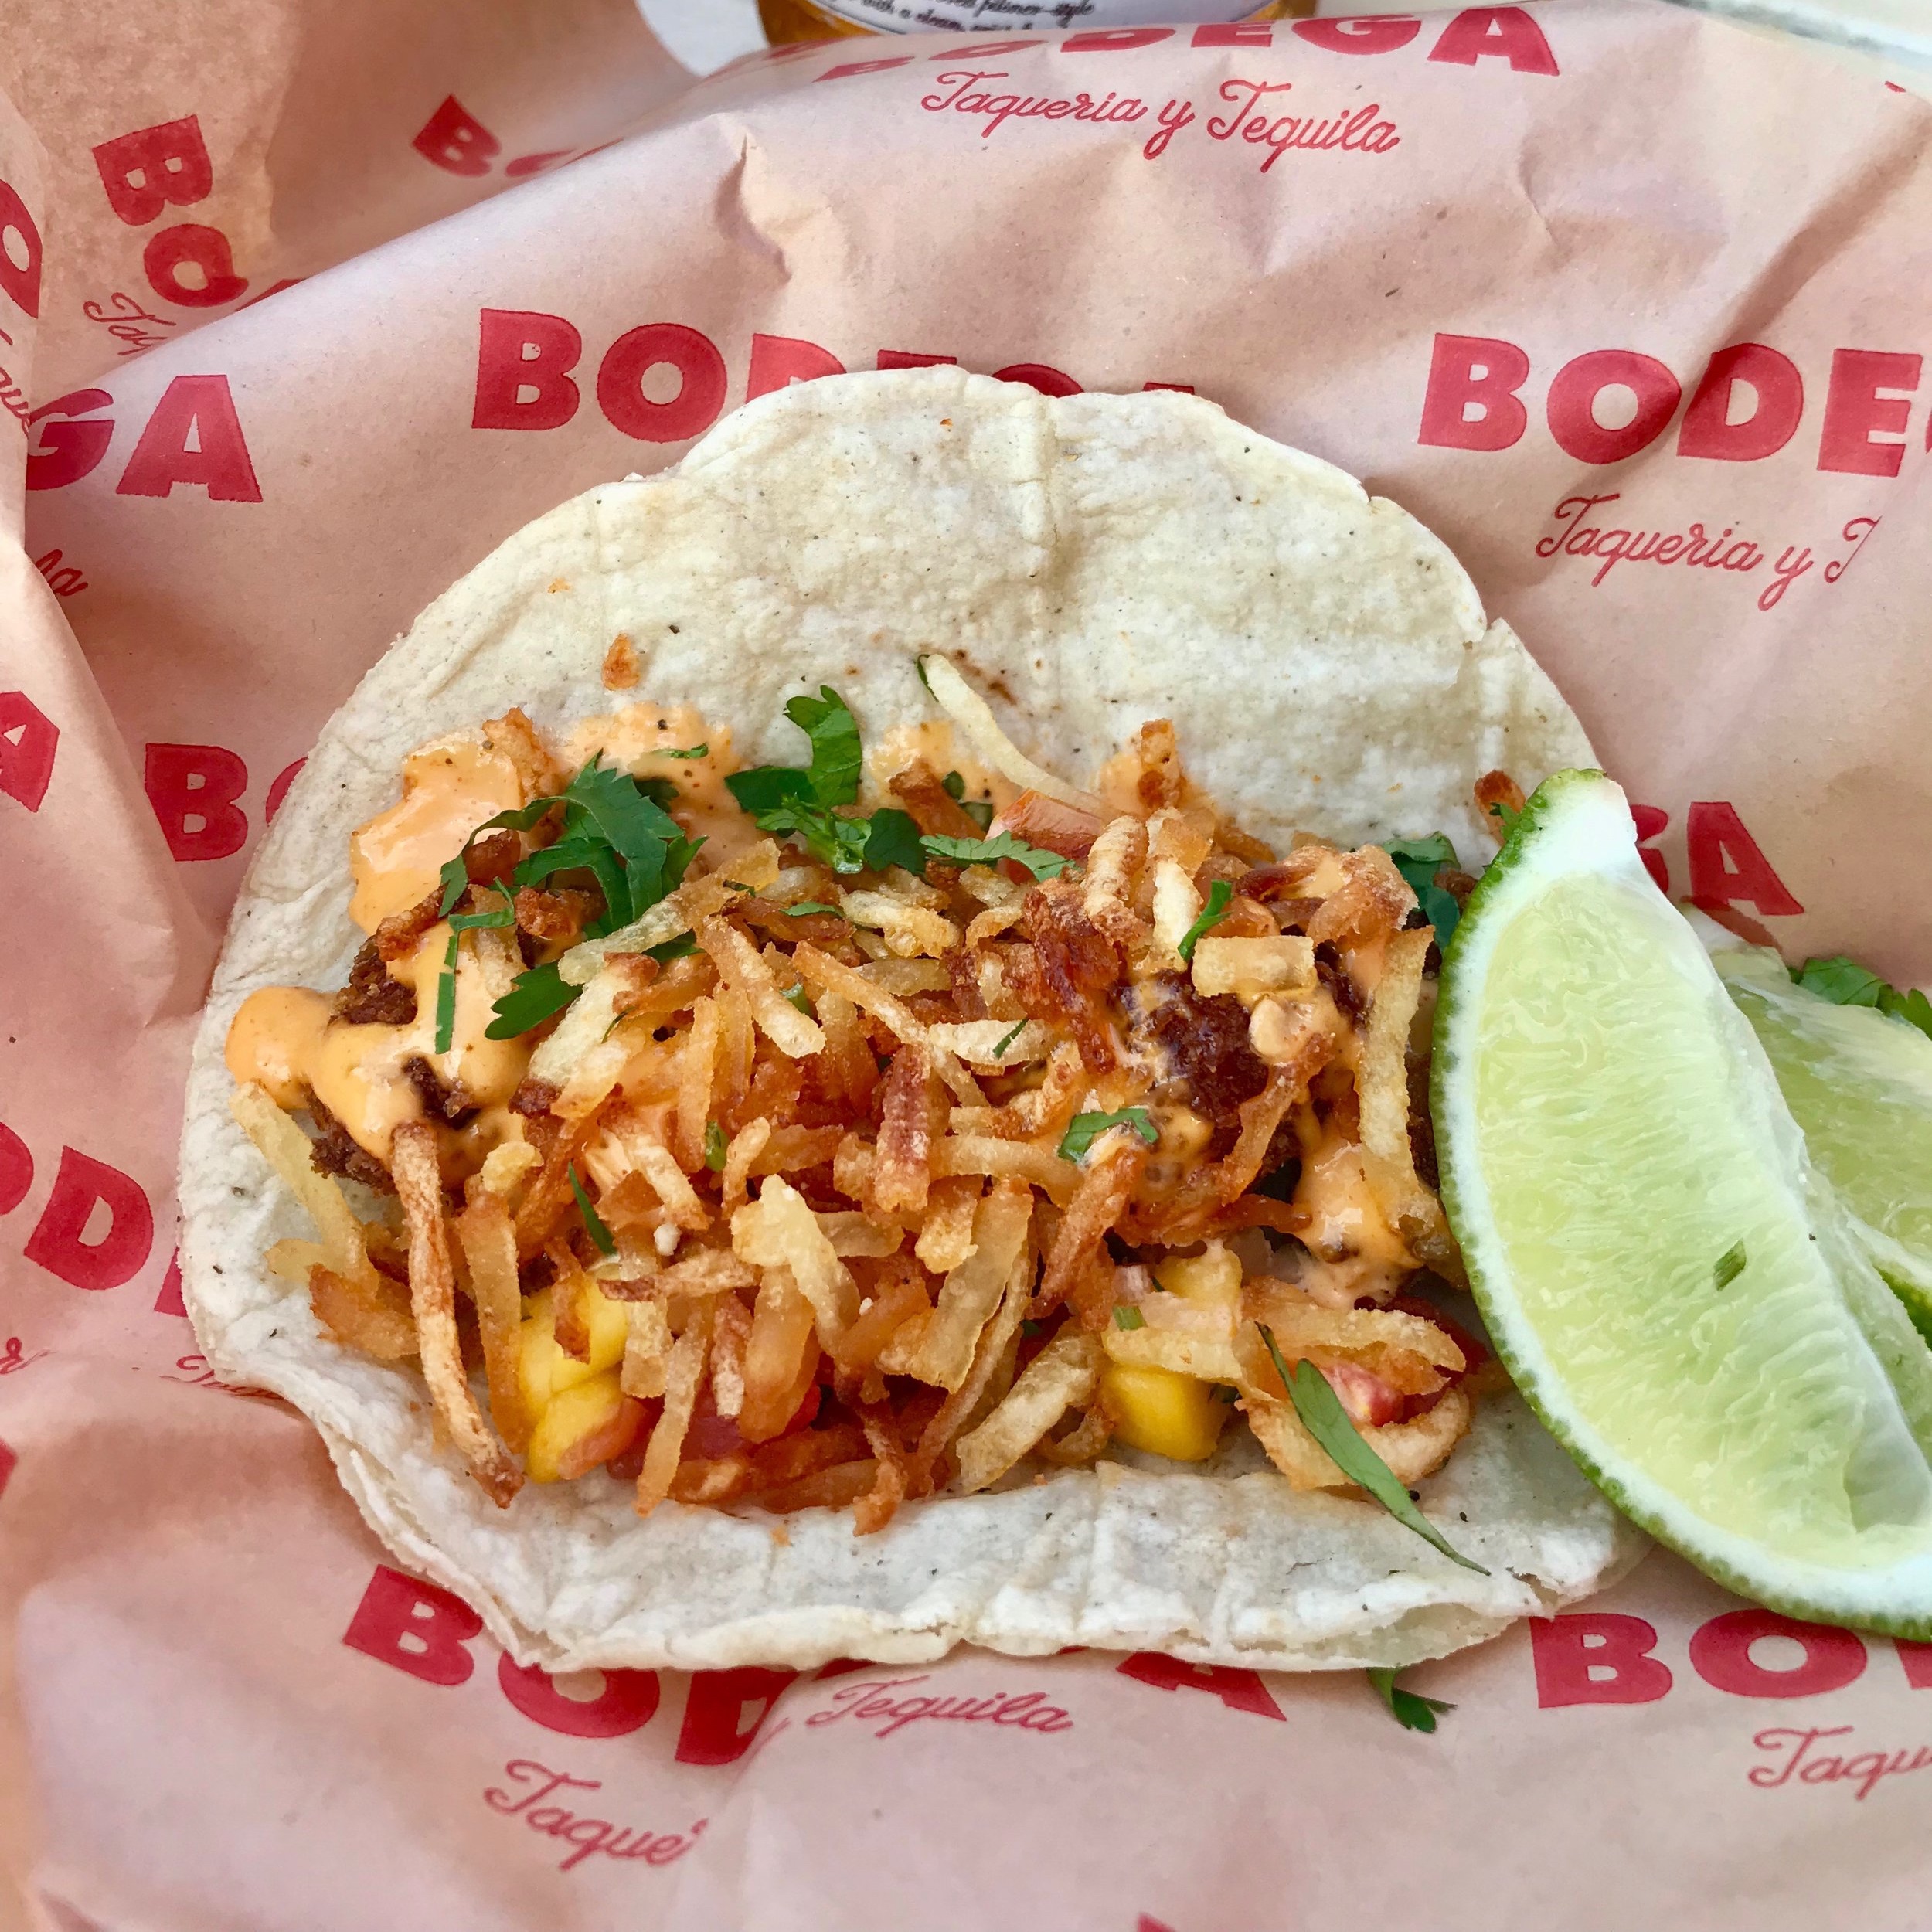 Bodega Taqueria y Tequila - Lobster Taco. Miami, FL